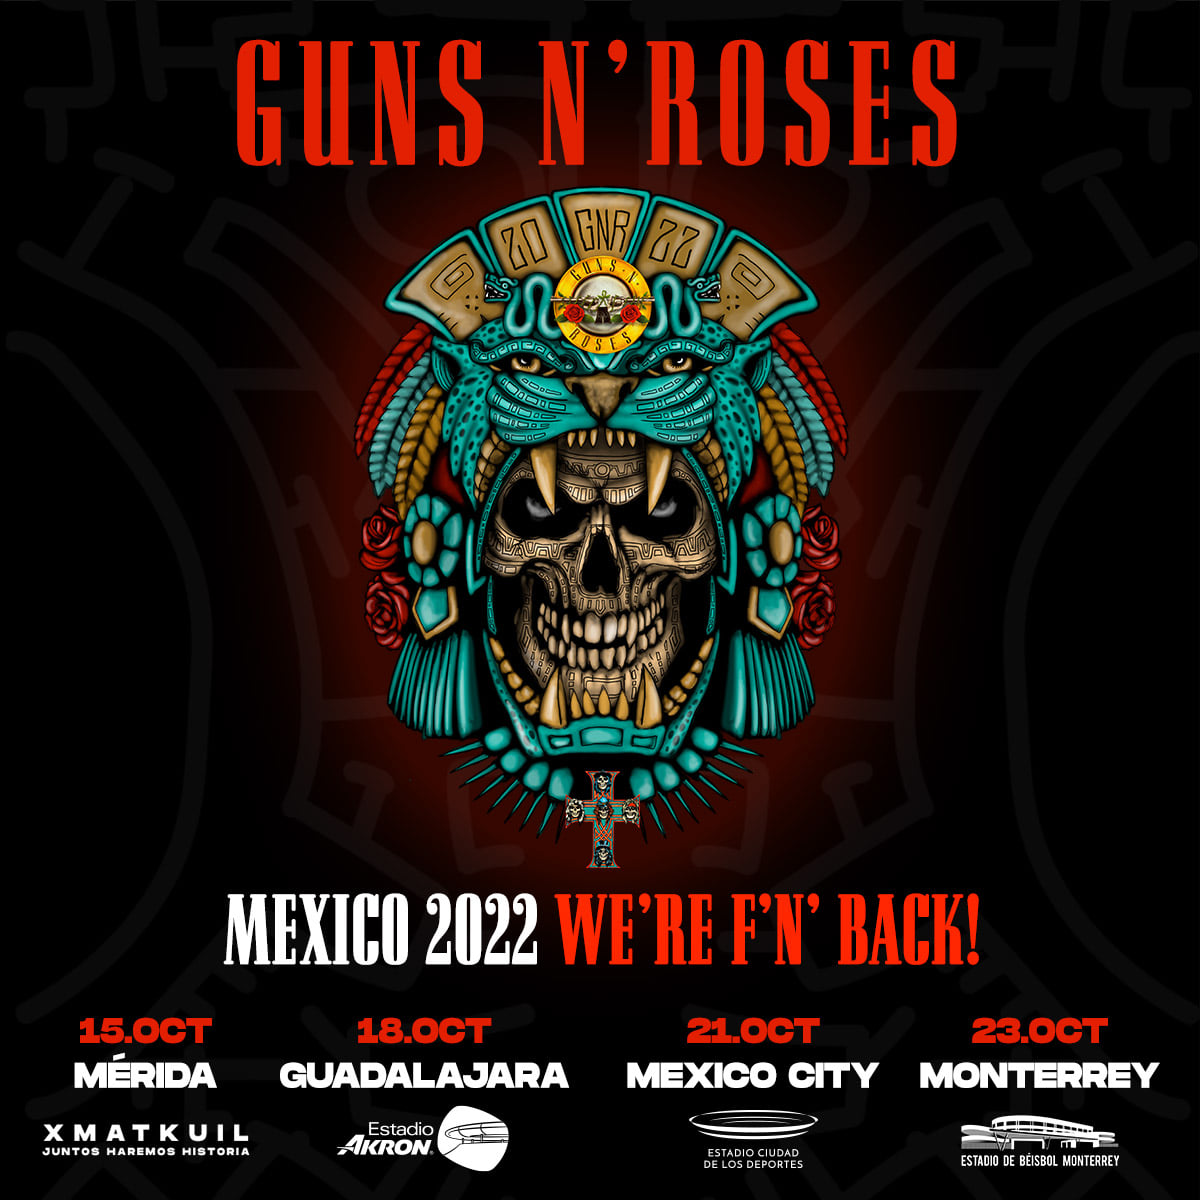 Aquí las nuevas fechas de Guns N' Roses en México para 2022